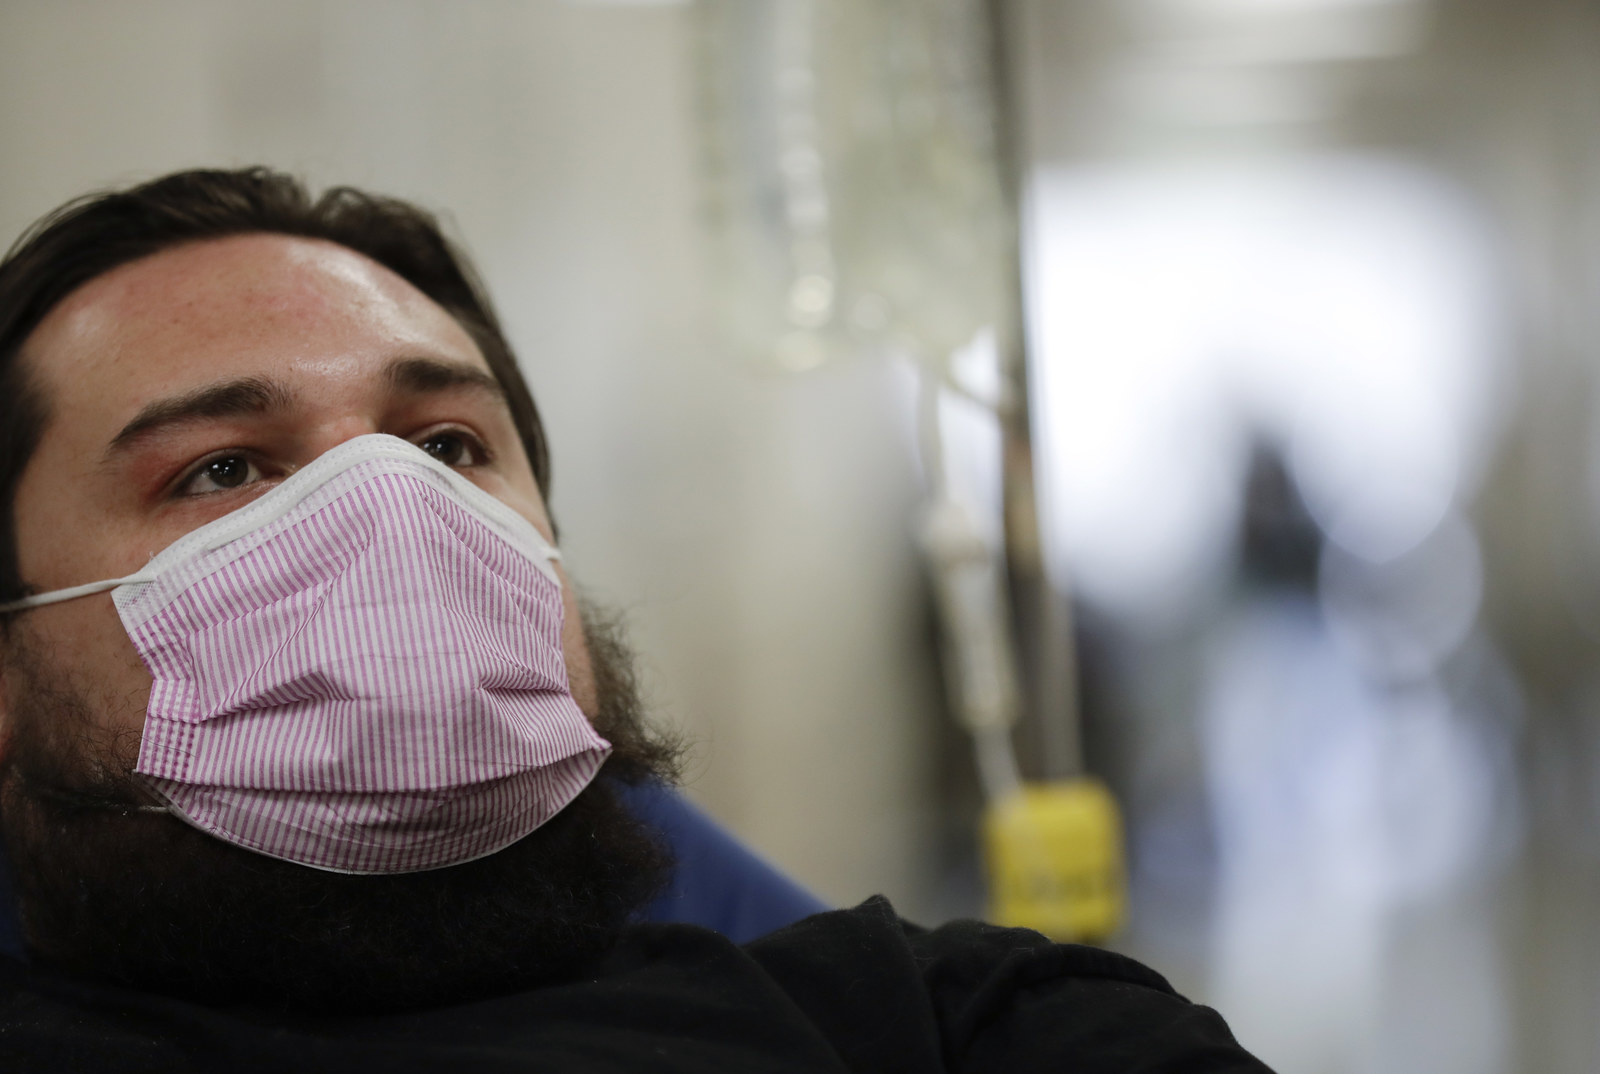   Cúm có thể gây tử vong cao nhưng nhiều người vẫn tỏ ra thờ ơ  